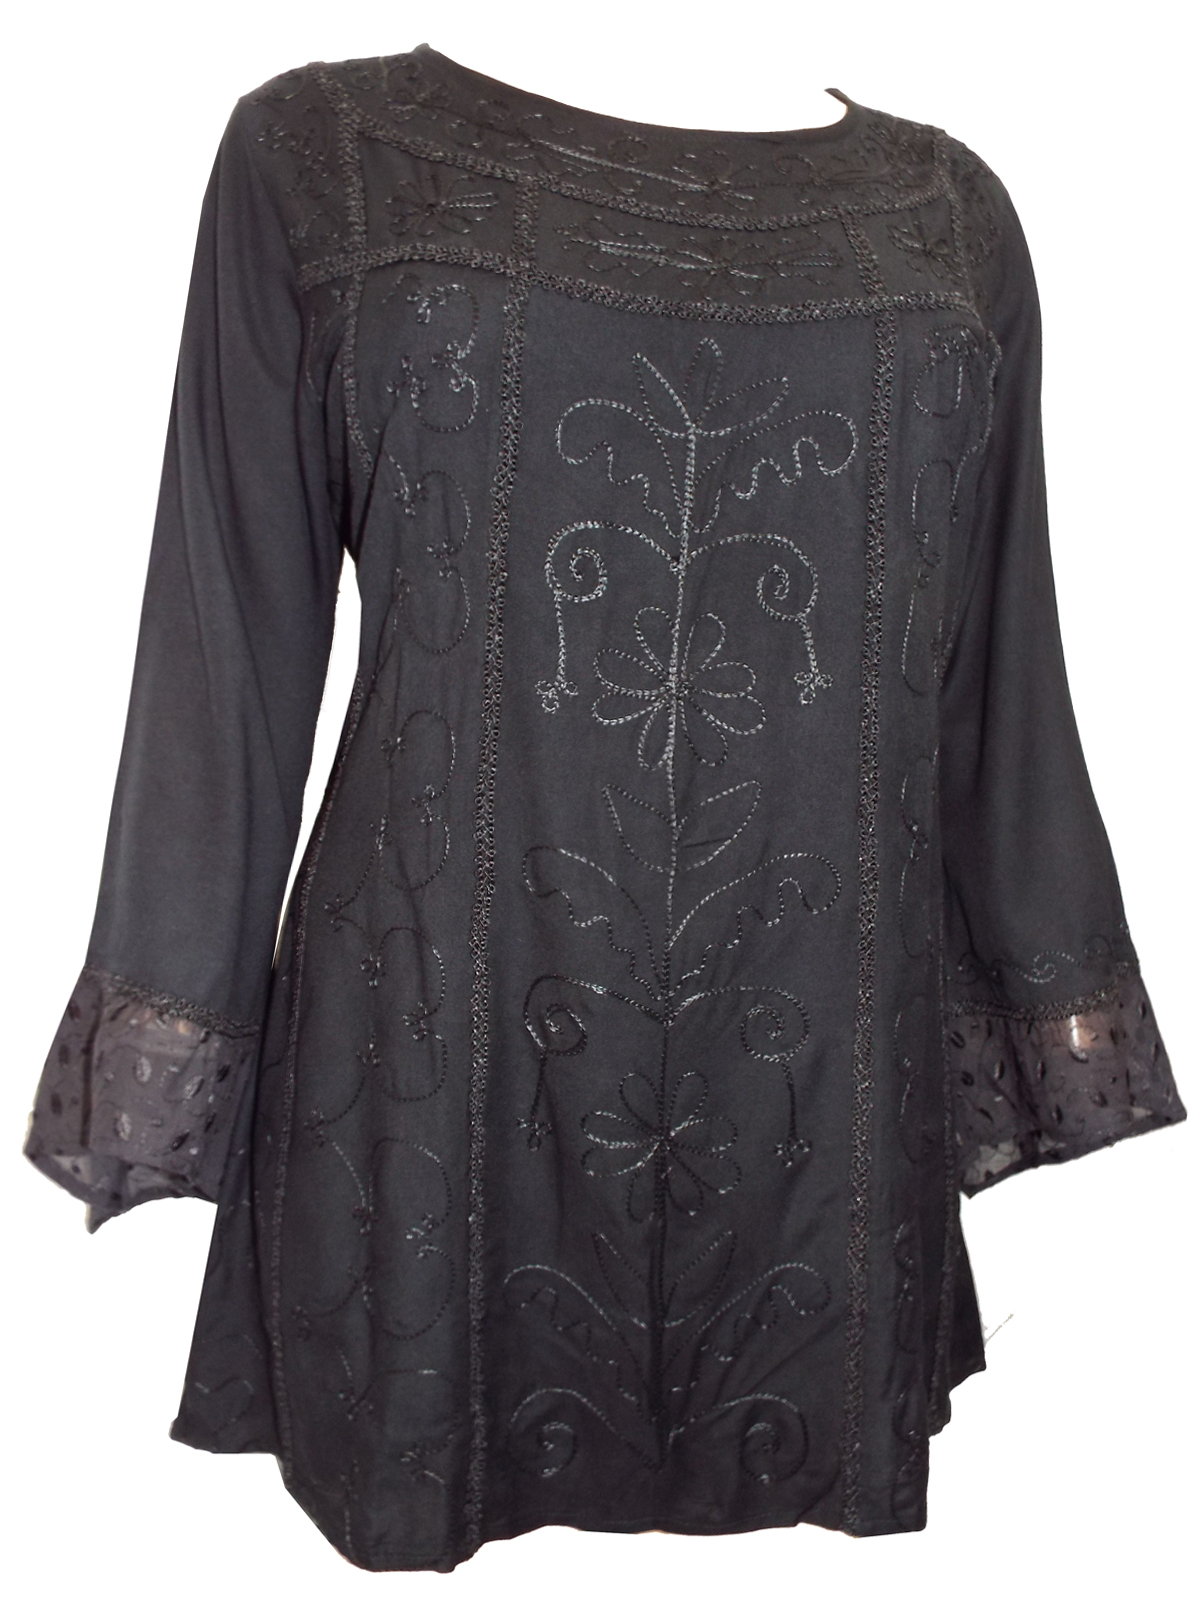 eaonplus BLACK Egyptian Renaissance Gothic Tunic - Plus Size 18 to 32